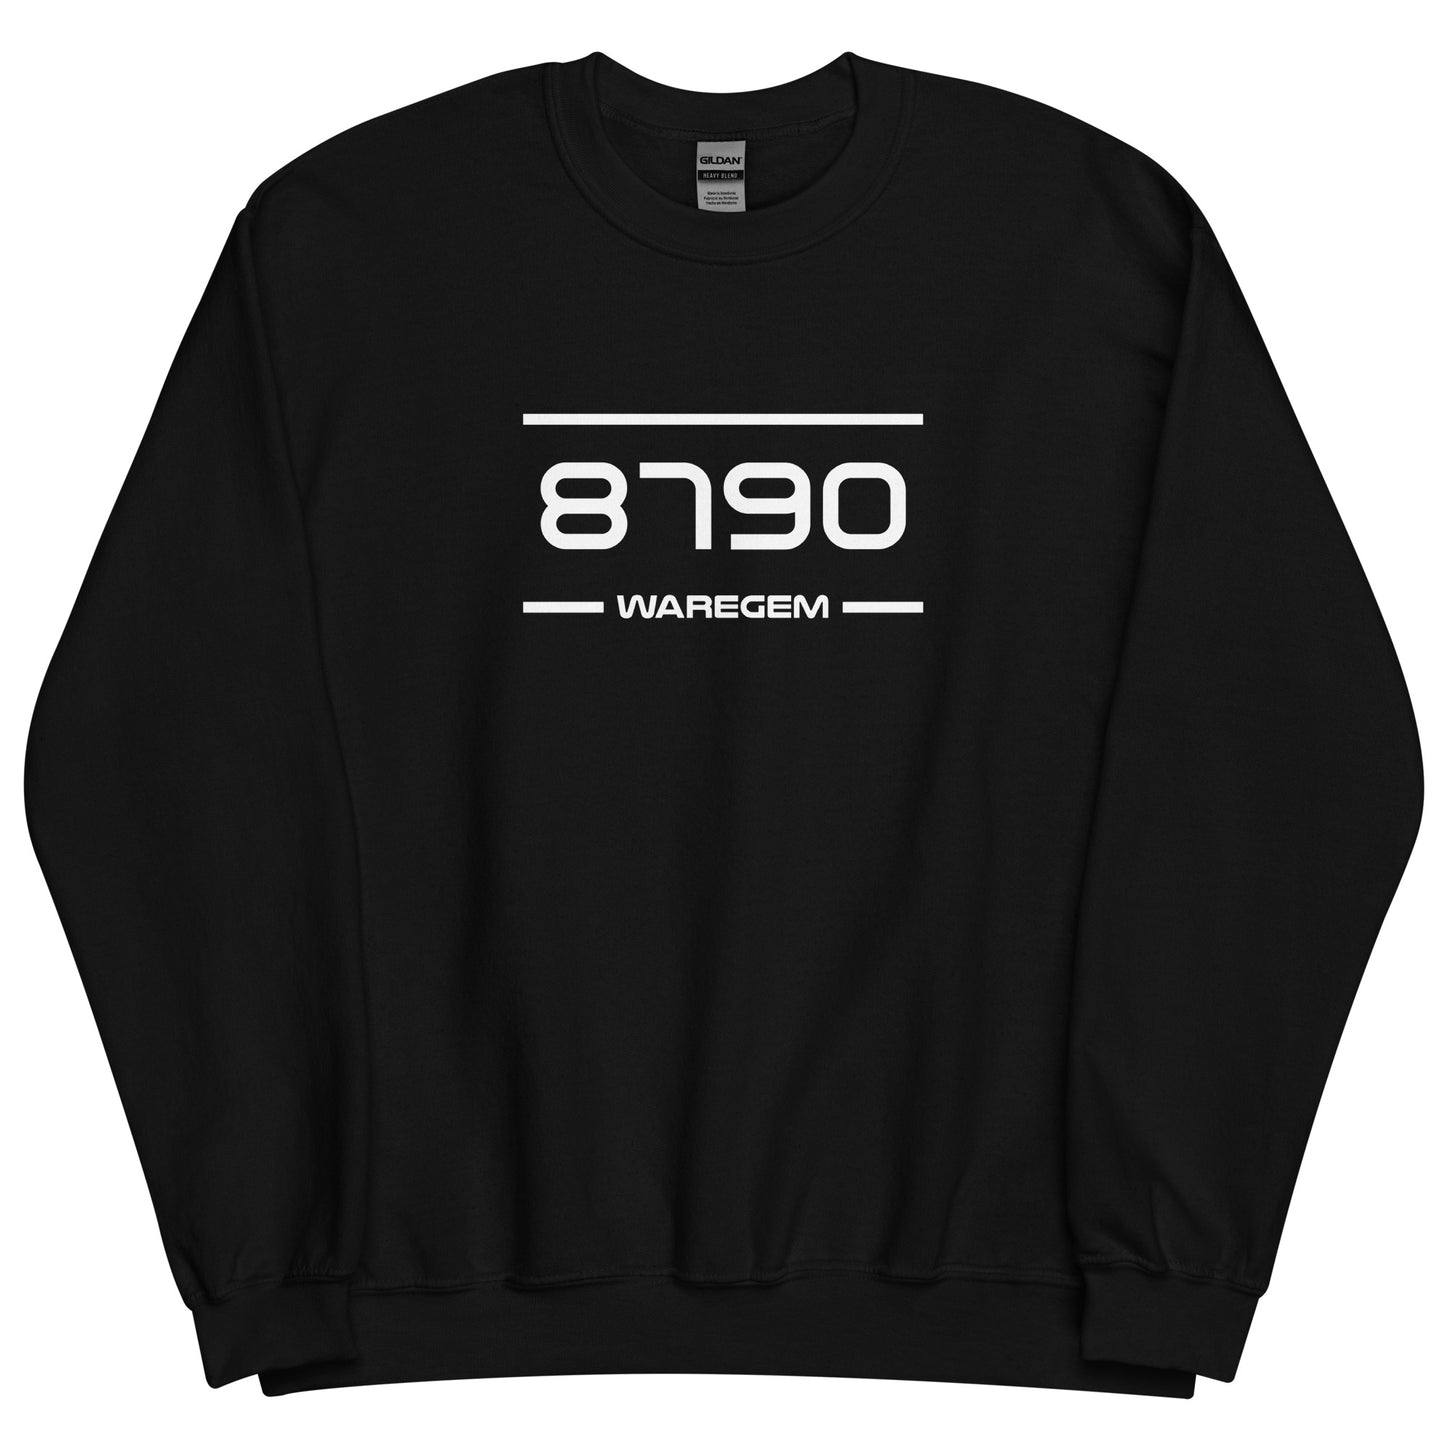 Sweater - 8790 - Waregem (M/V)